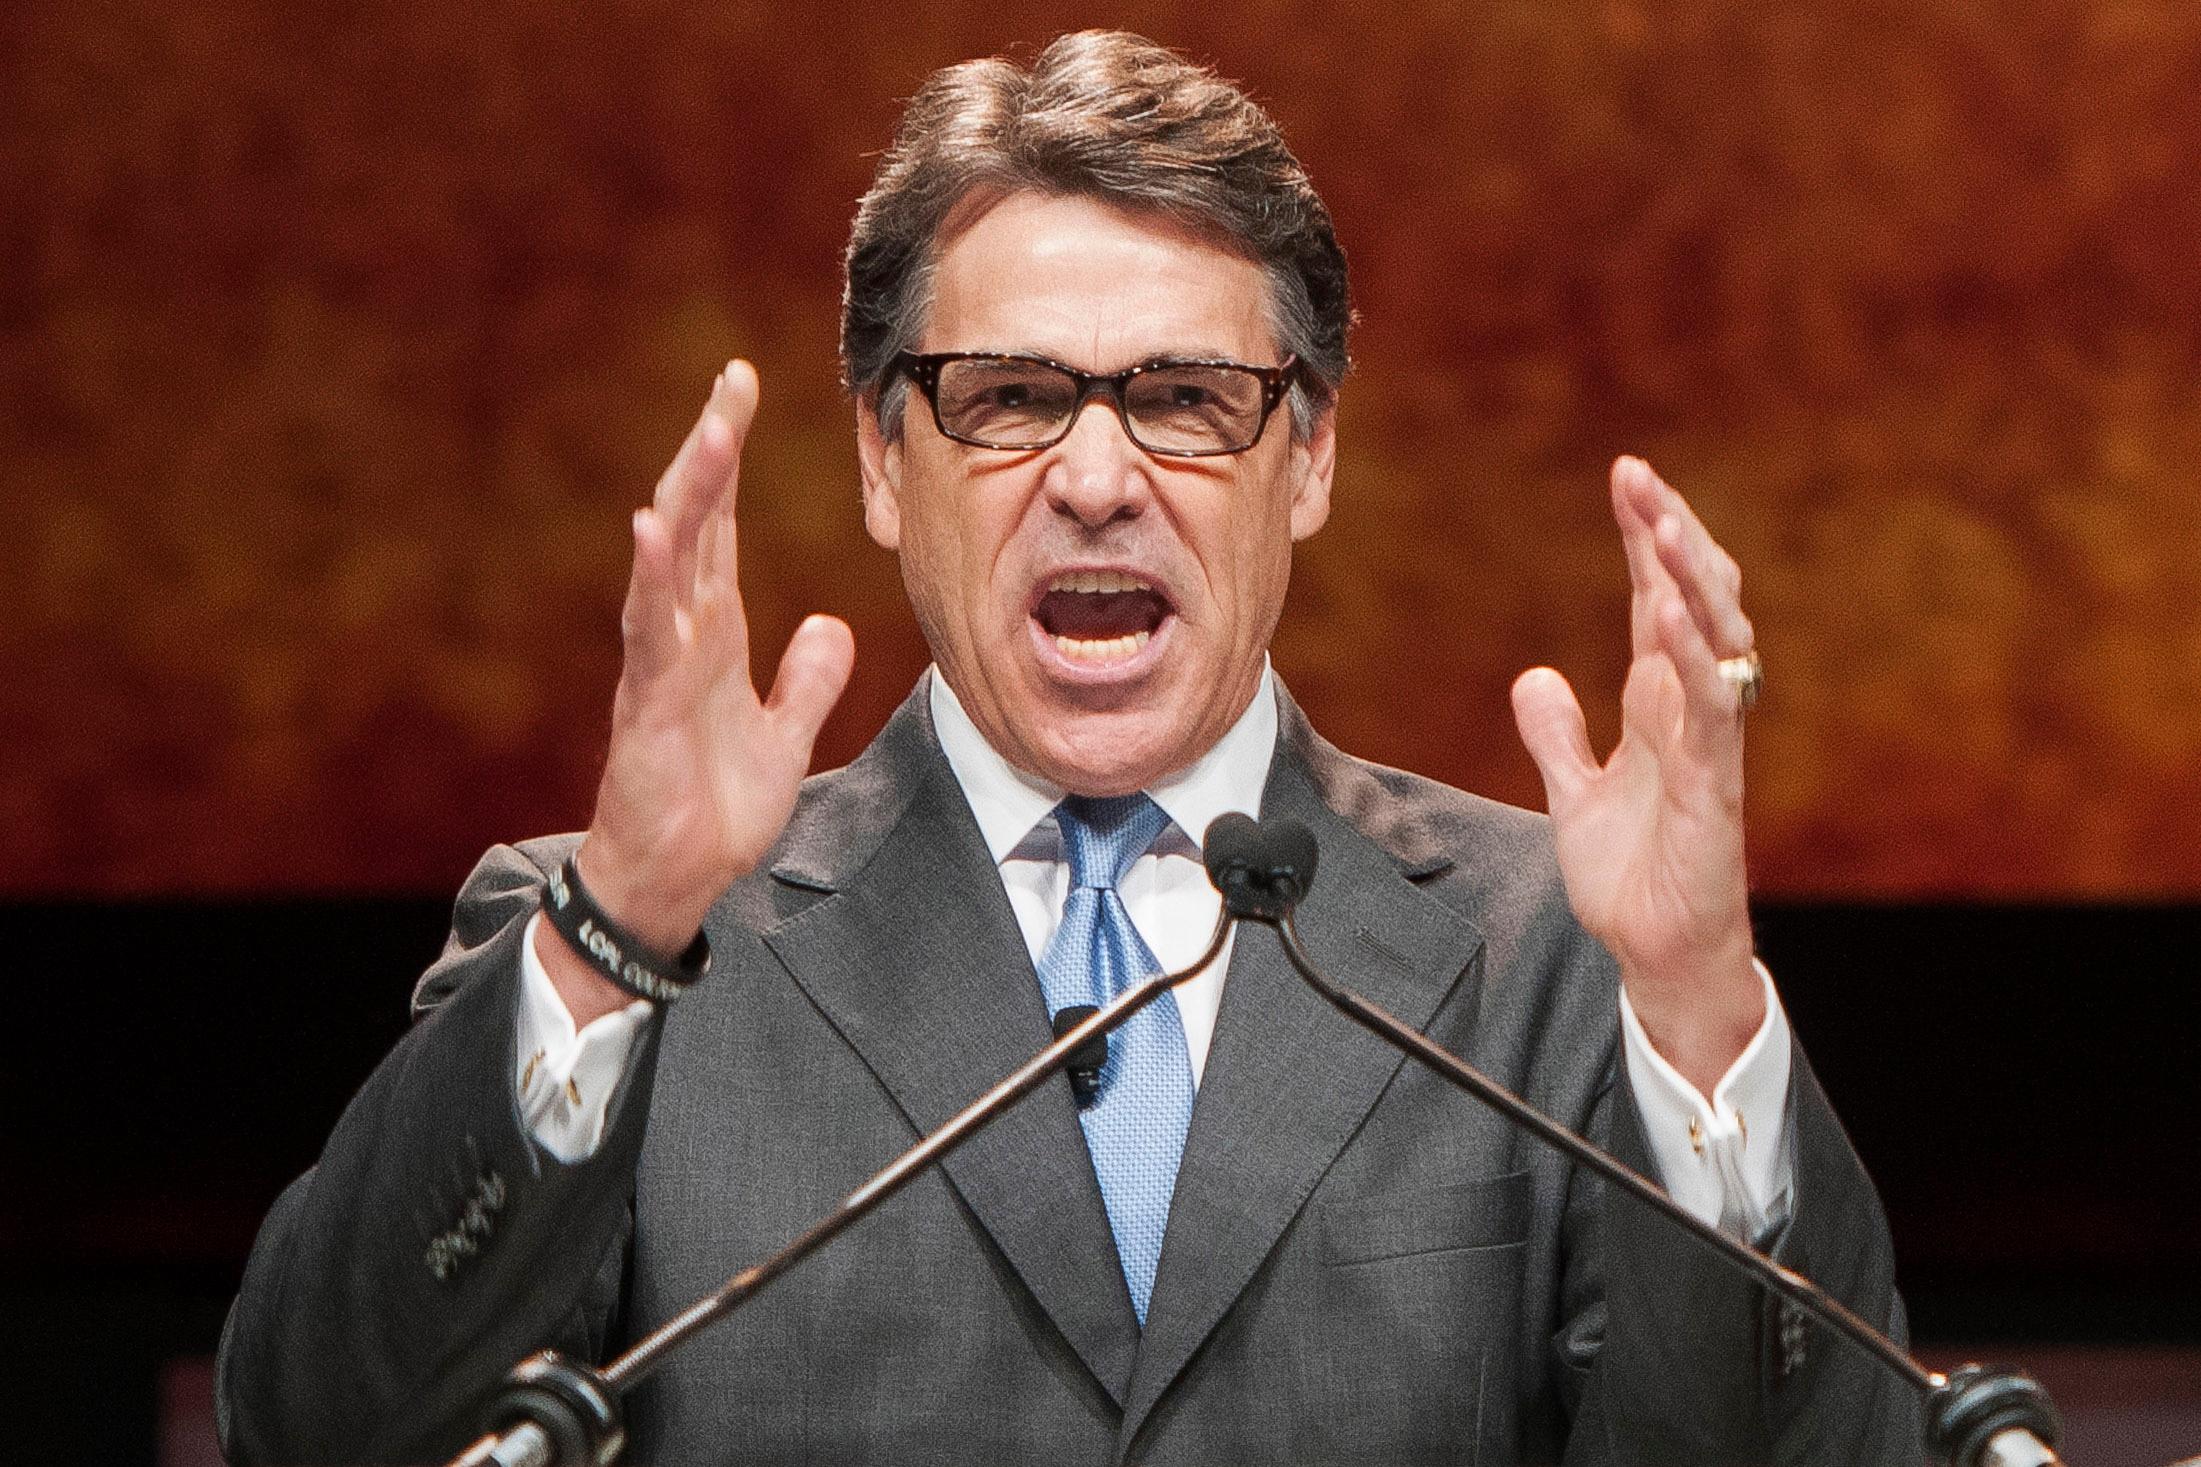 El gobierno mexicano responde a Rick Perry que sus críticas están infundadas